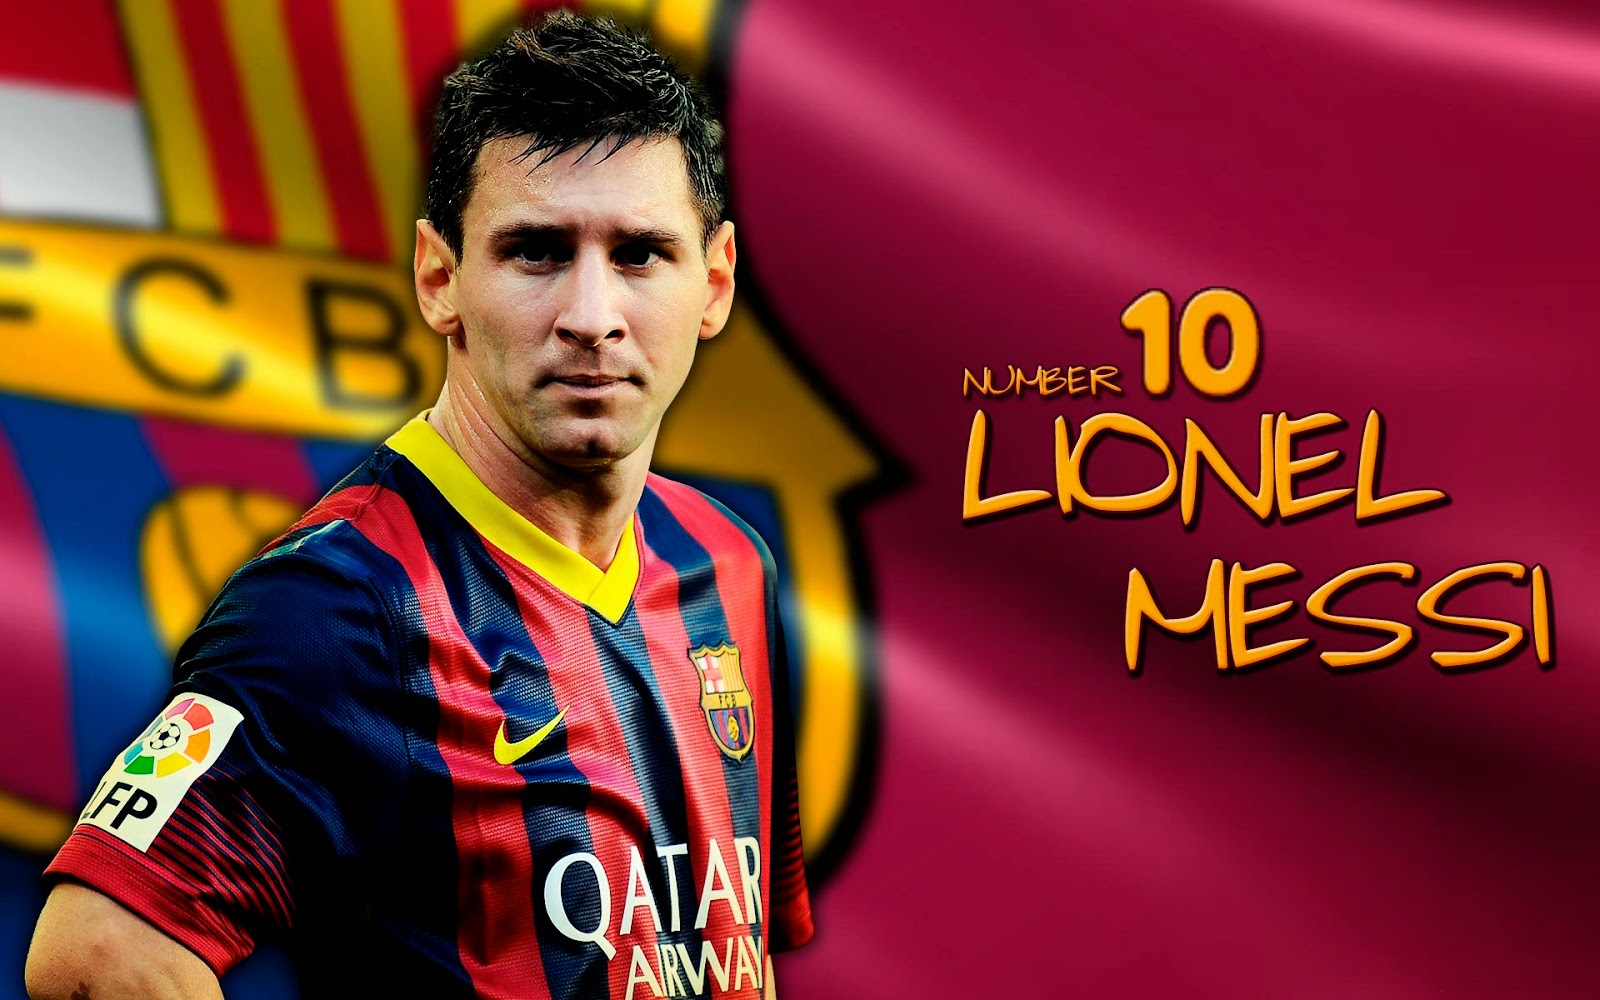 N Tng Ca Messi U Nm 2015 Nh Video Zingvn - Lionel Messi Wallpaper 2015 , HD Wallpaper & Backgrounds